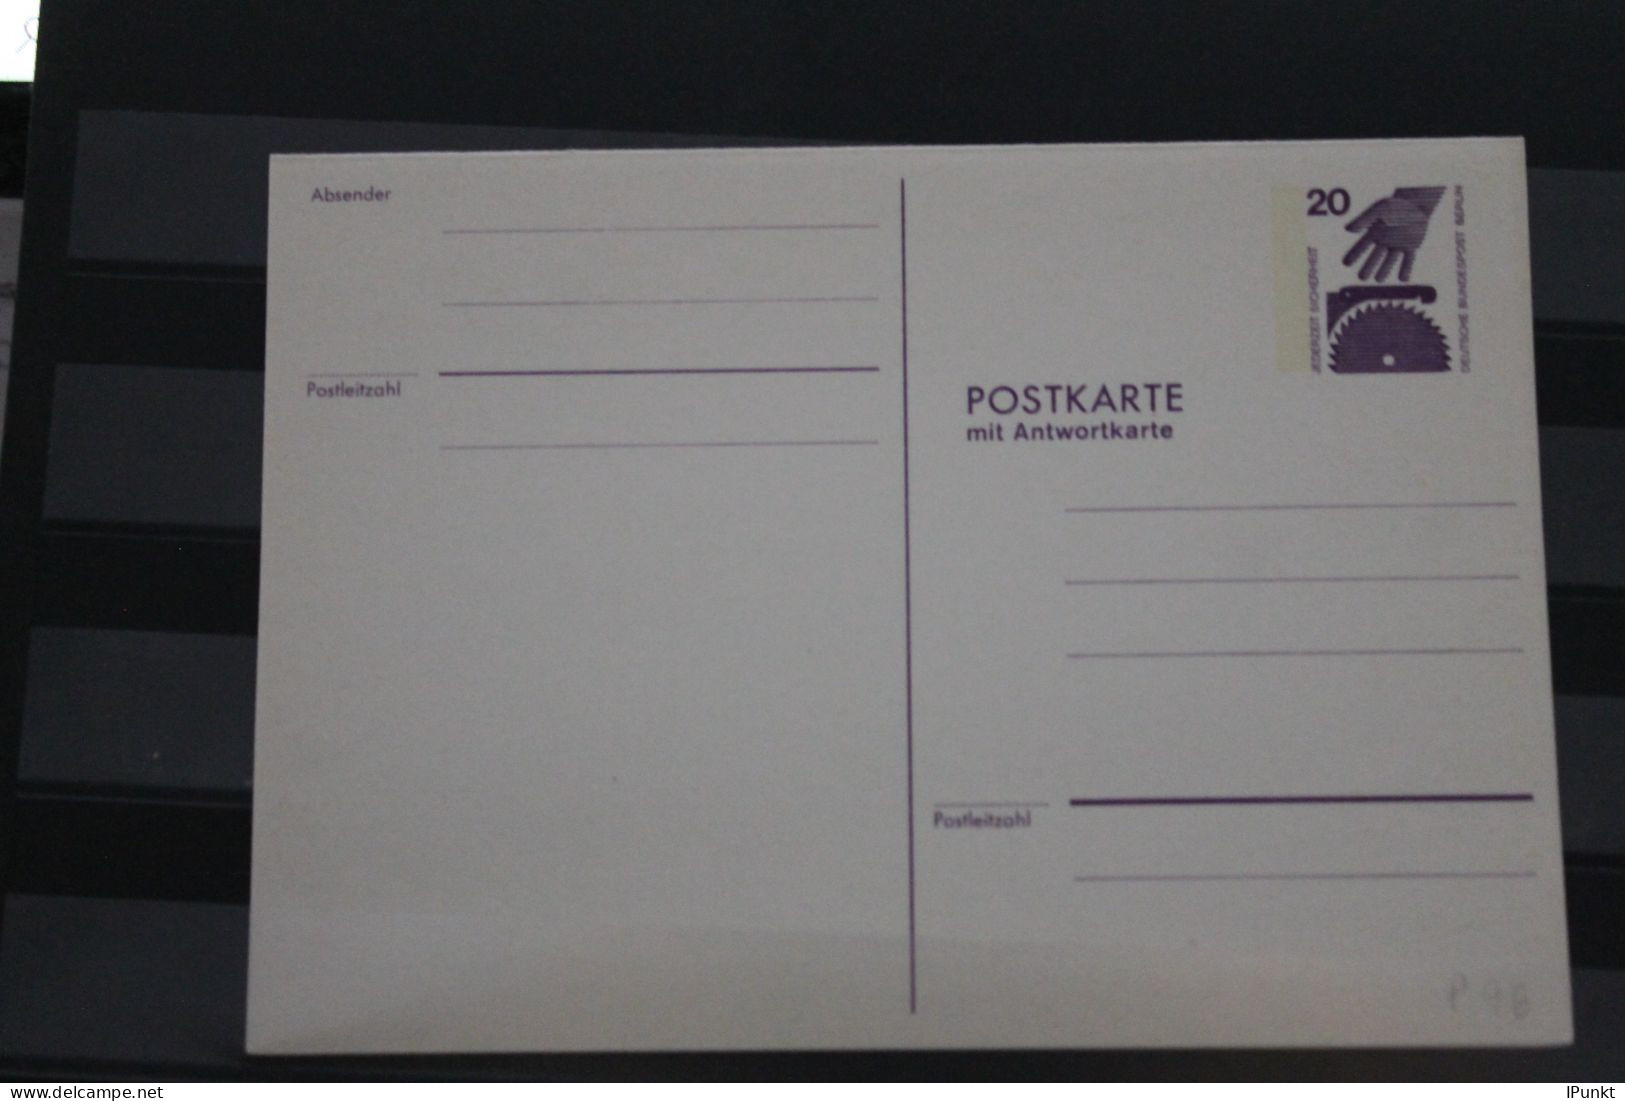 Berlin 1974; Ganzsache Unfallverhütung Postkarte Mit Antwortkarte   P 96; Ungebraucht - Postales - Nuevos